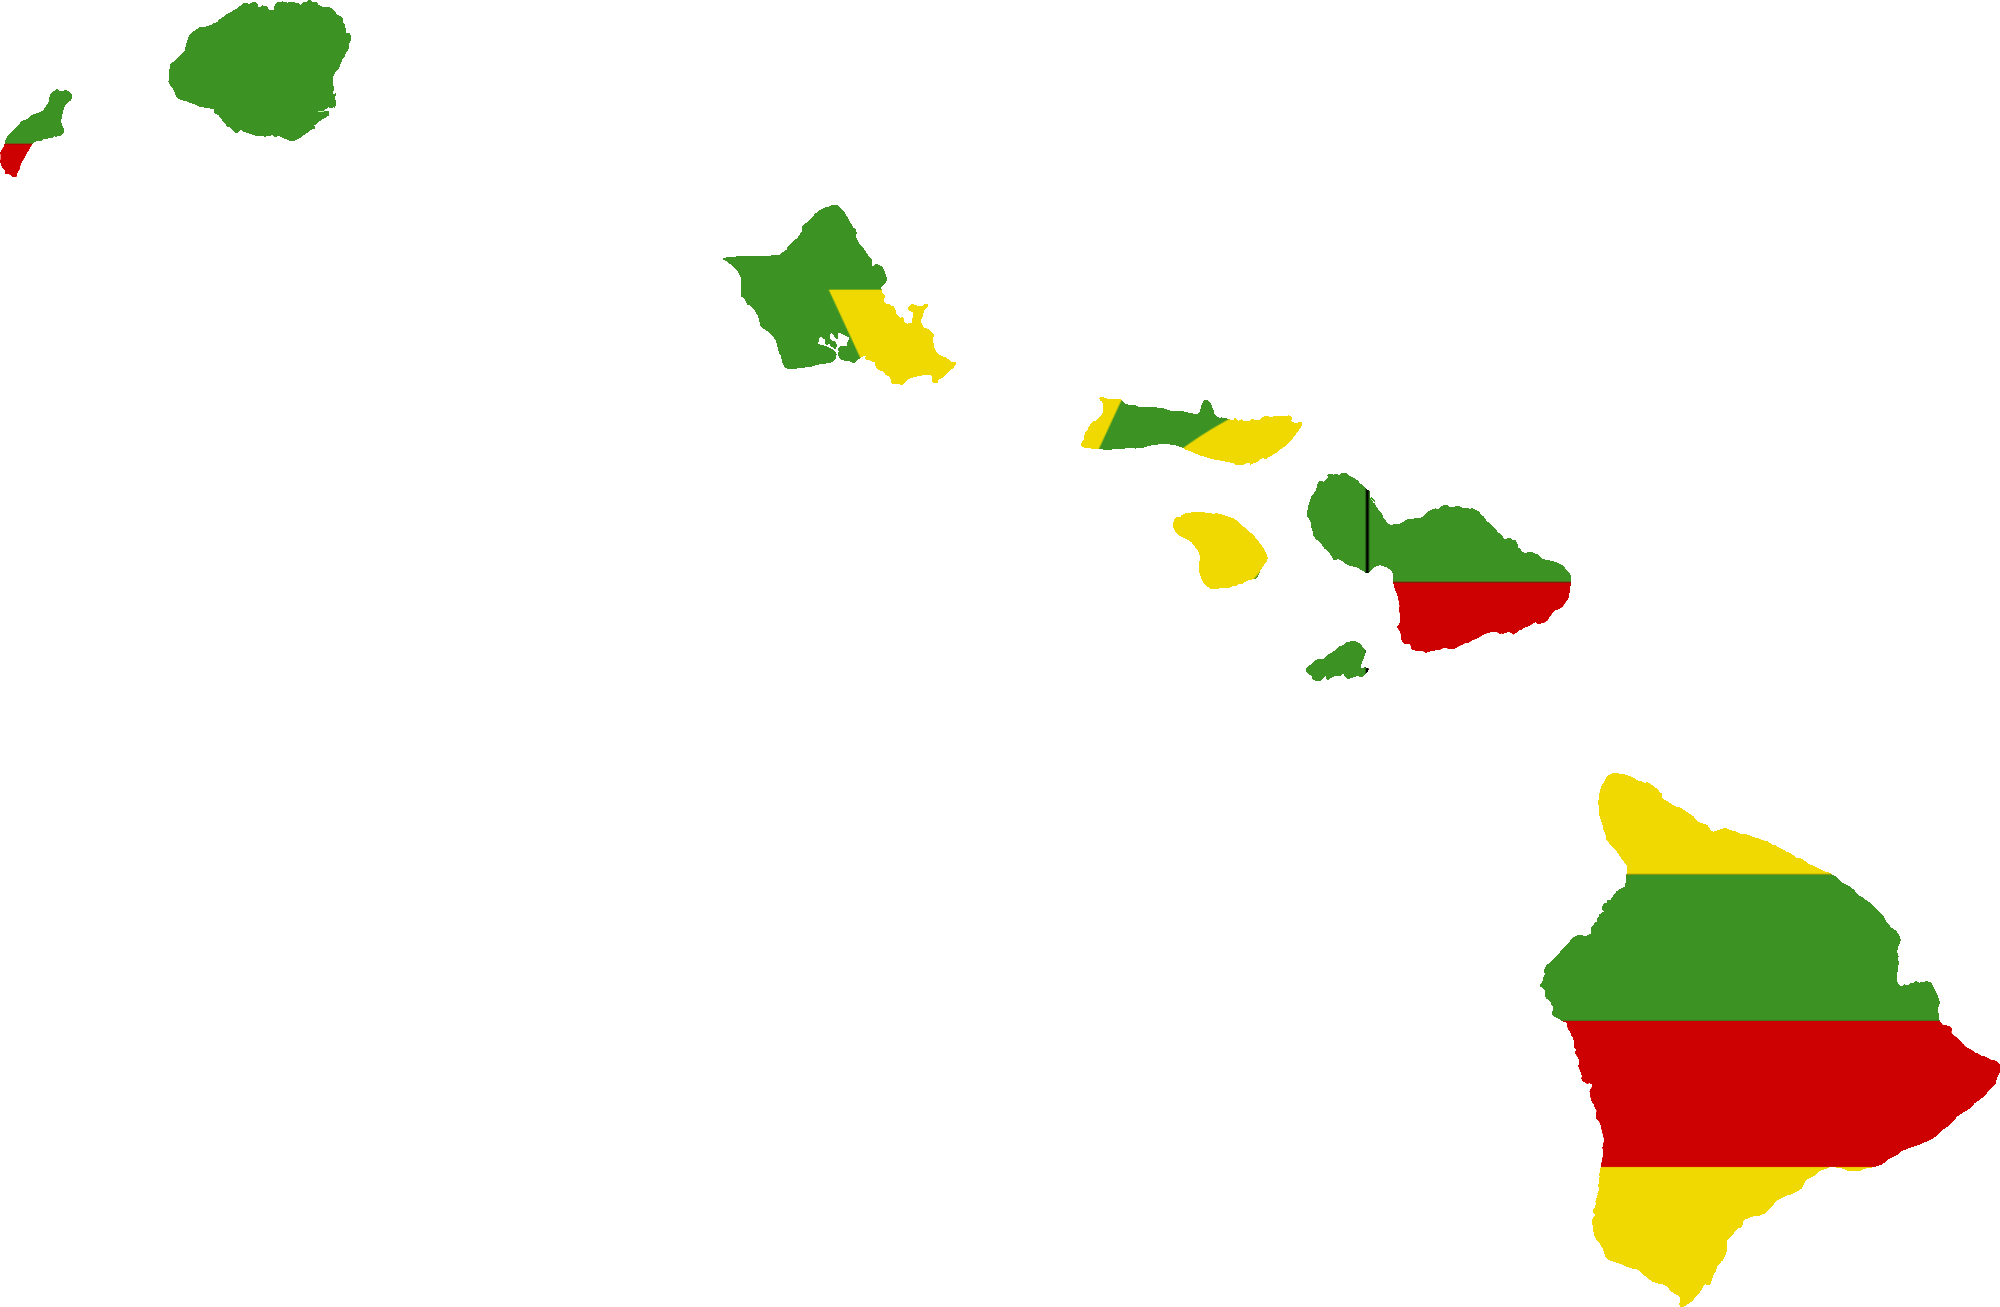 island clipart map hawaii